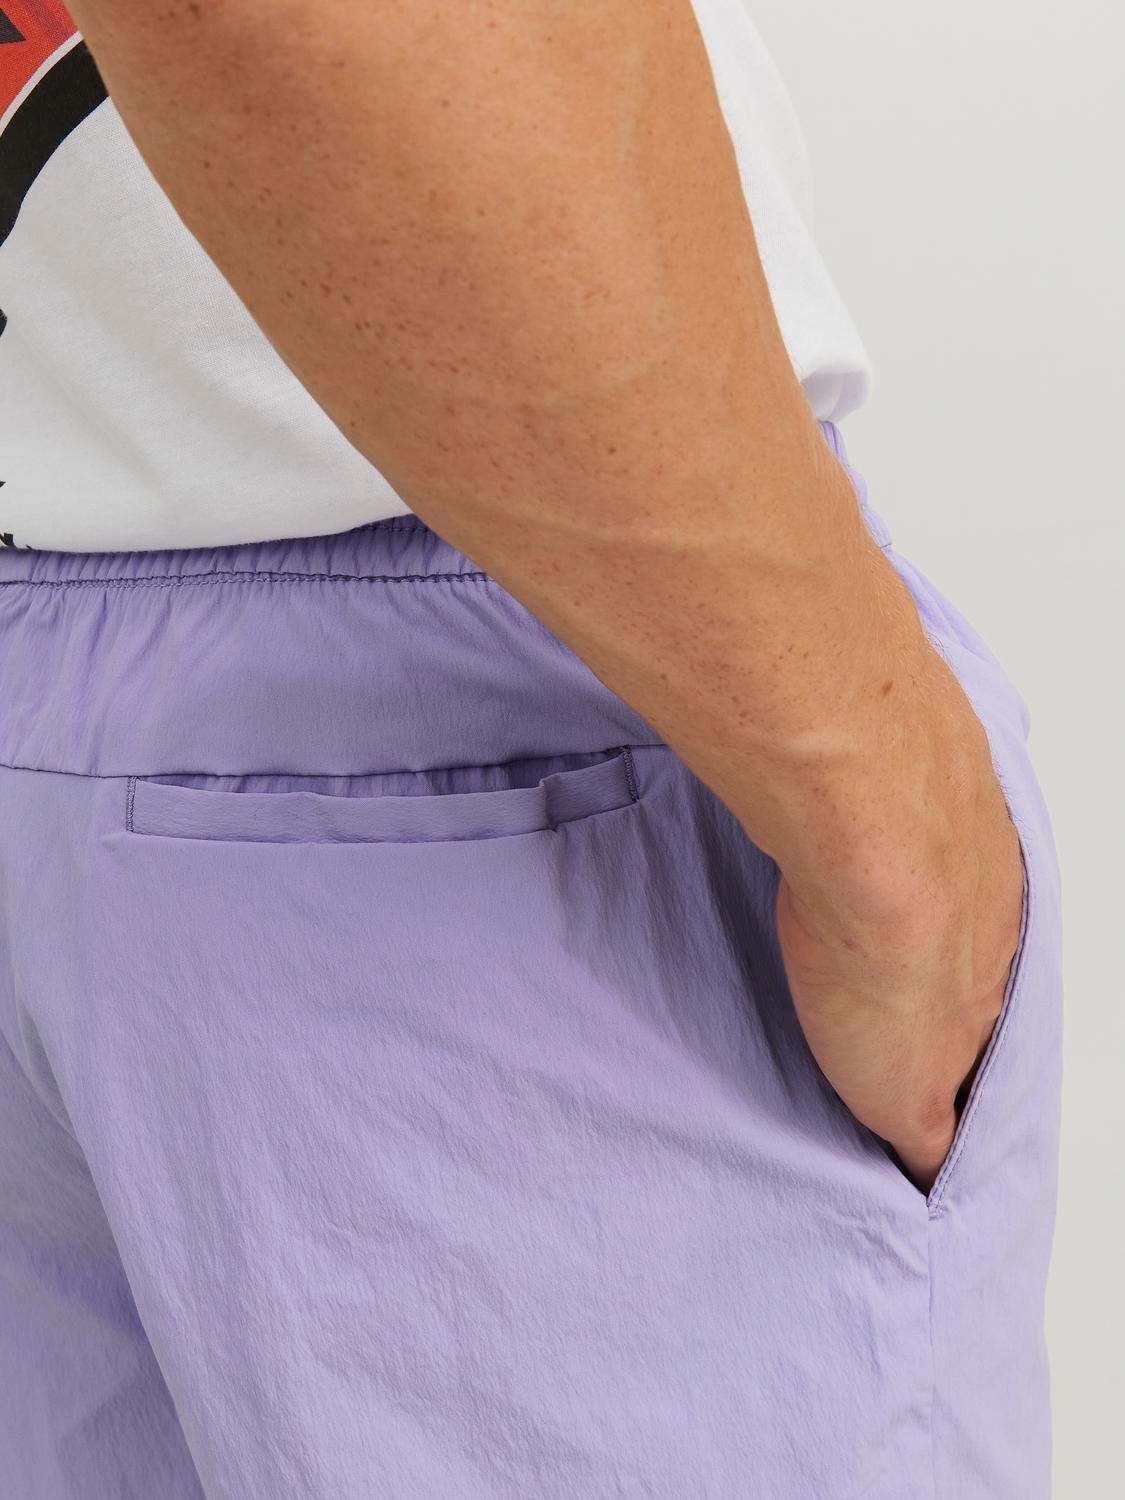 Jack & Jones Regular Fit Shorts -Lavender - 12234715